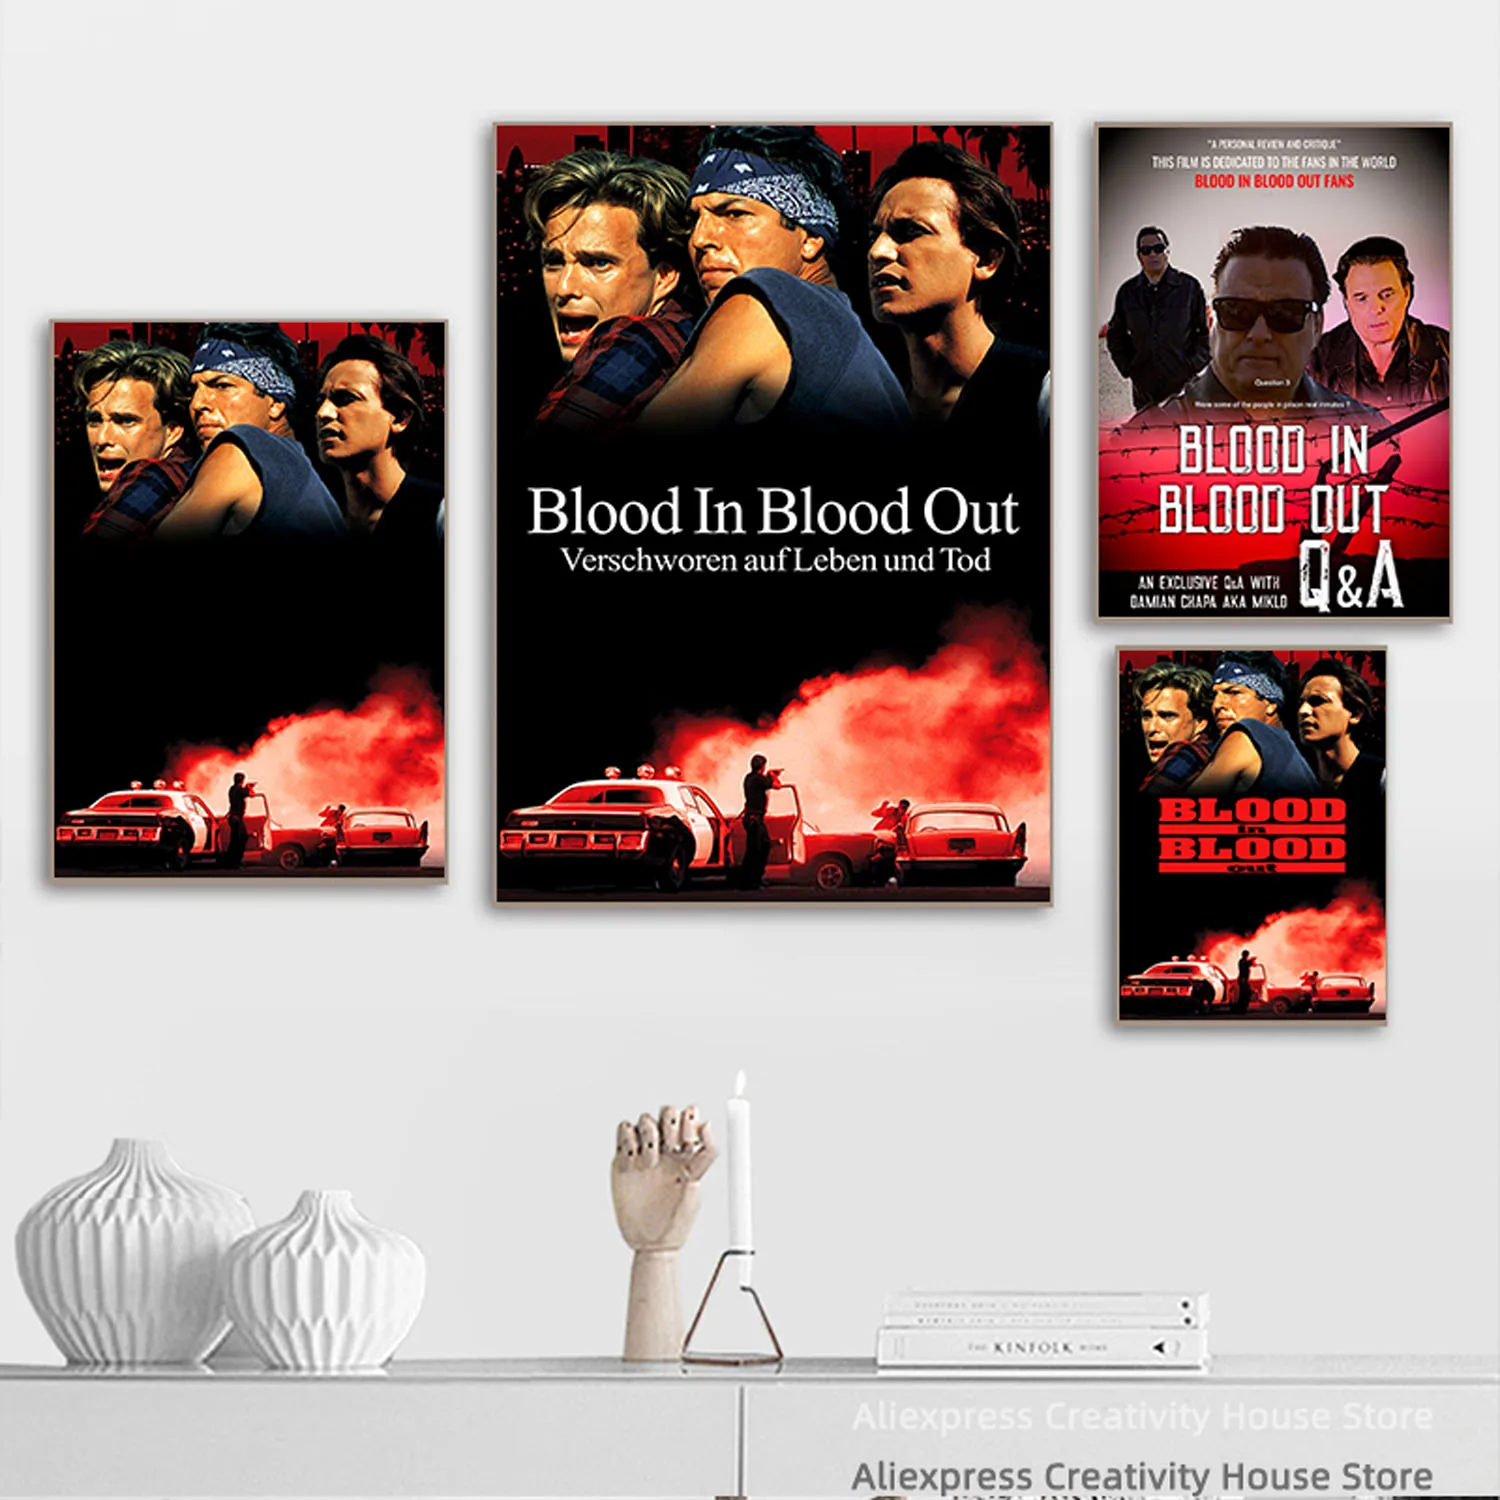 Blood In, Blood Out – Verschworen auf Leben und Tod: Trailer